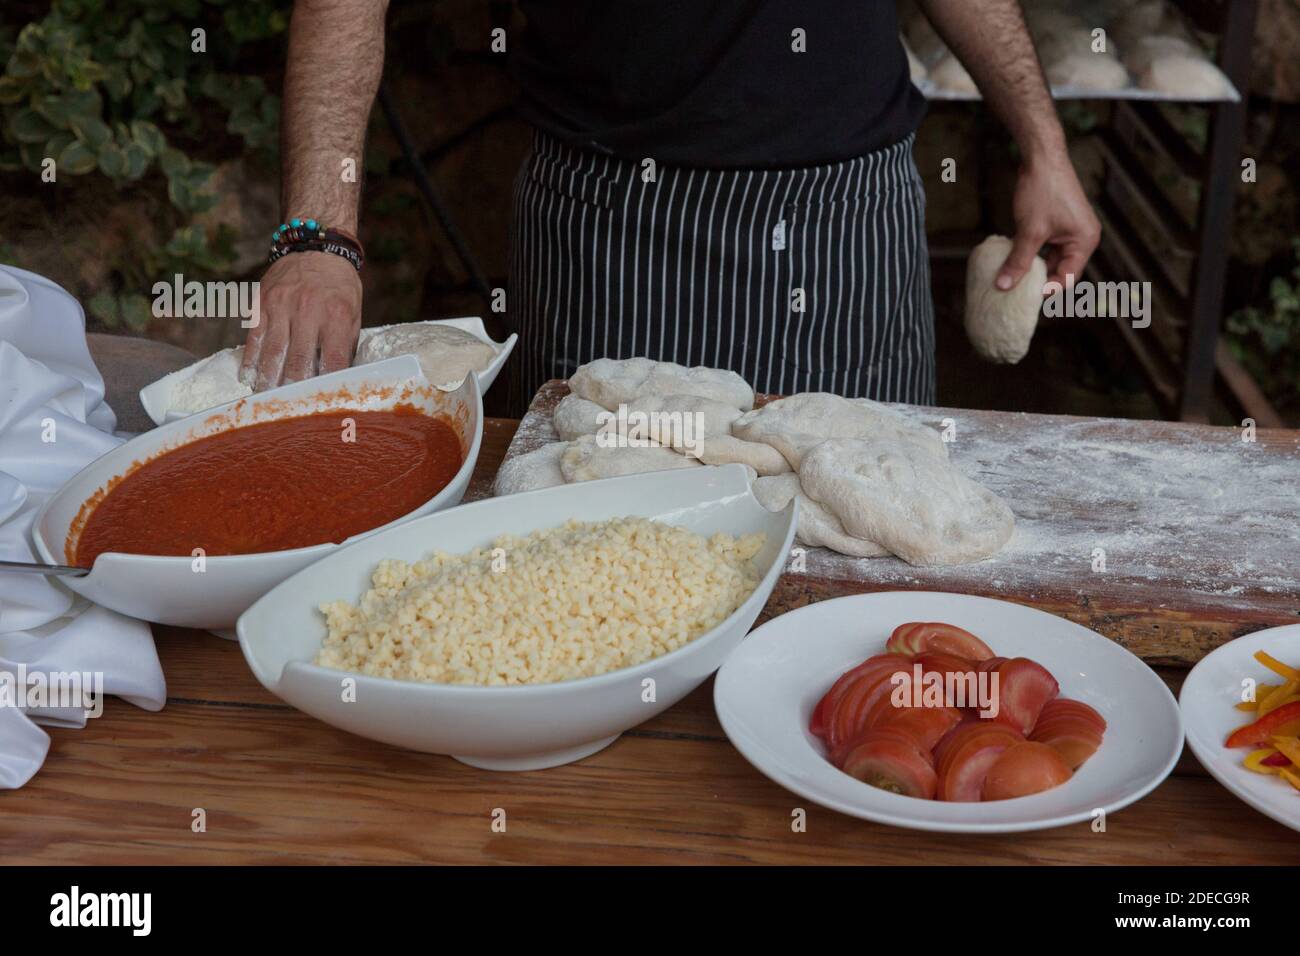 Preparazione e cottura di una focaccia pizza con purea di pomodoro e. formaggio Foto Stock